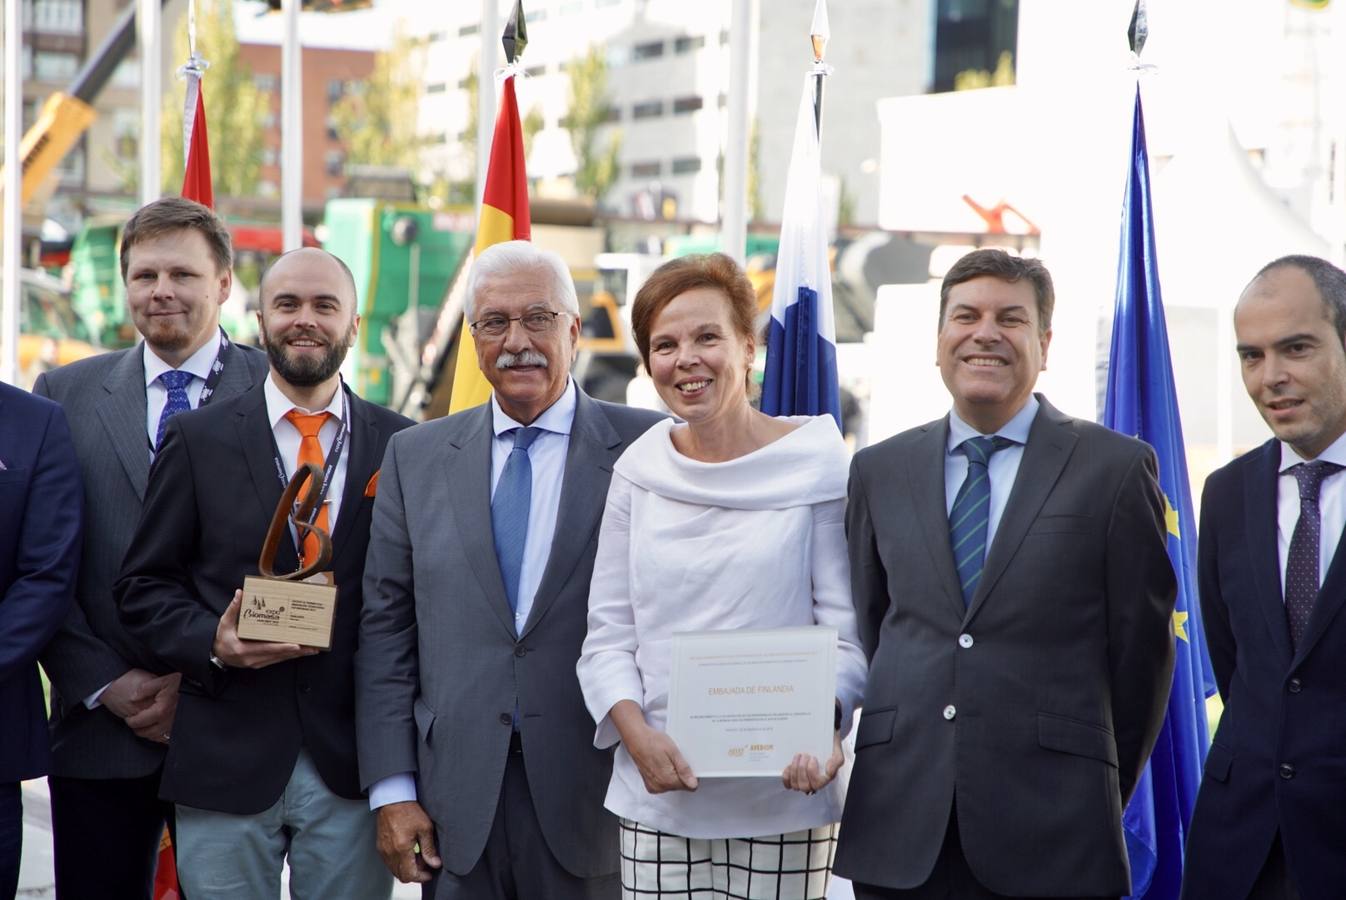 El consejero de Economía y Hacienda, Carlos Fernández Carriedo, y la embajadora de Finlandia, Tina Jortikka, visitan la Feria Expobiomasa, en Valladolid, con motivo de la celebración del Día del país nórdico.